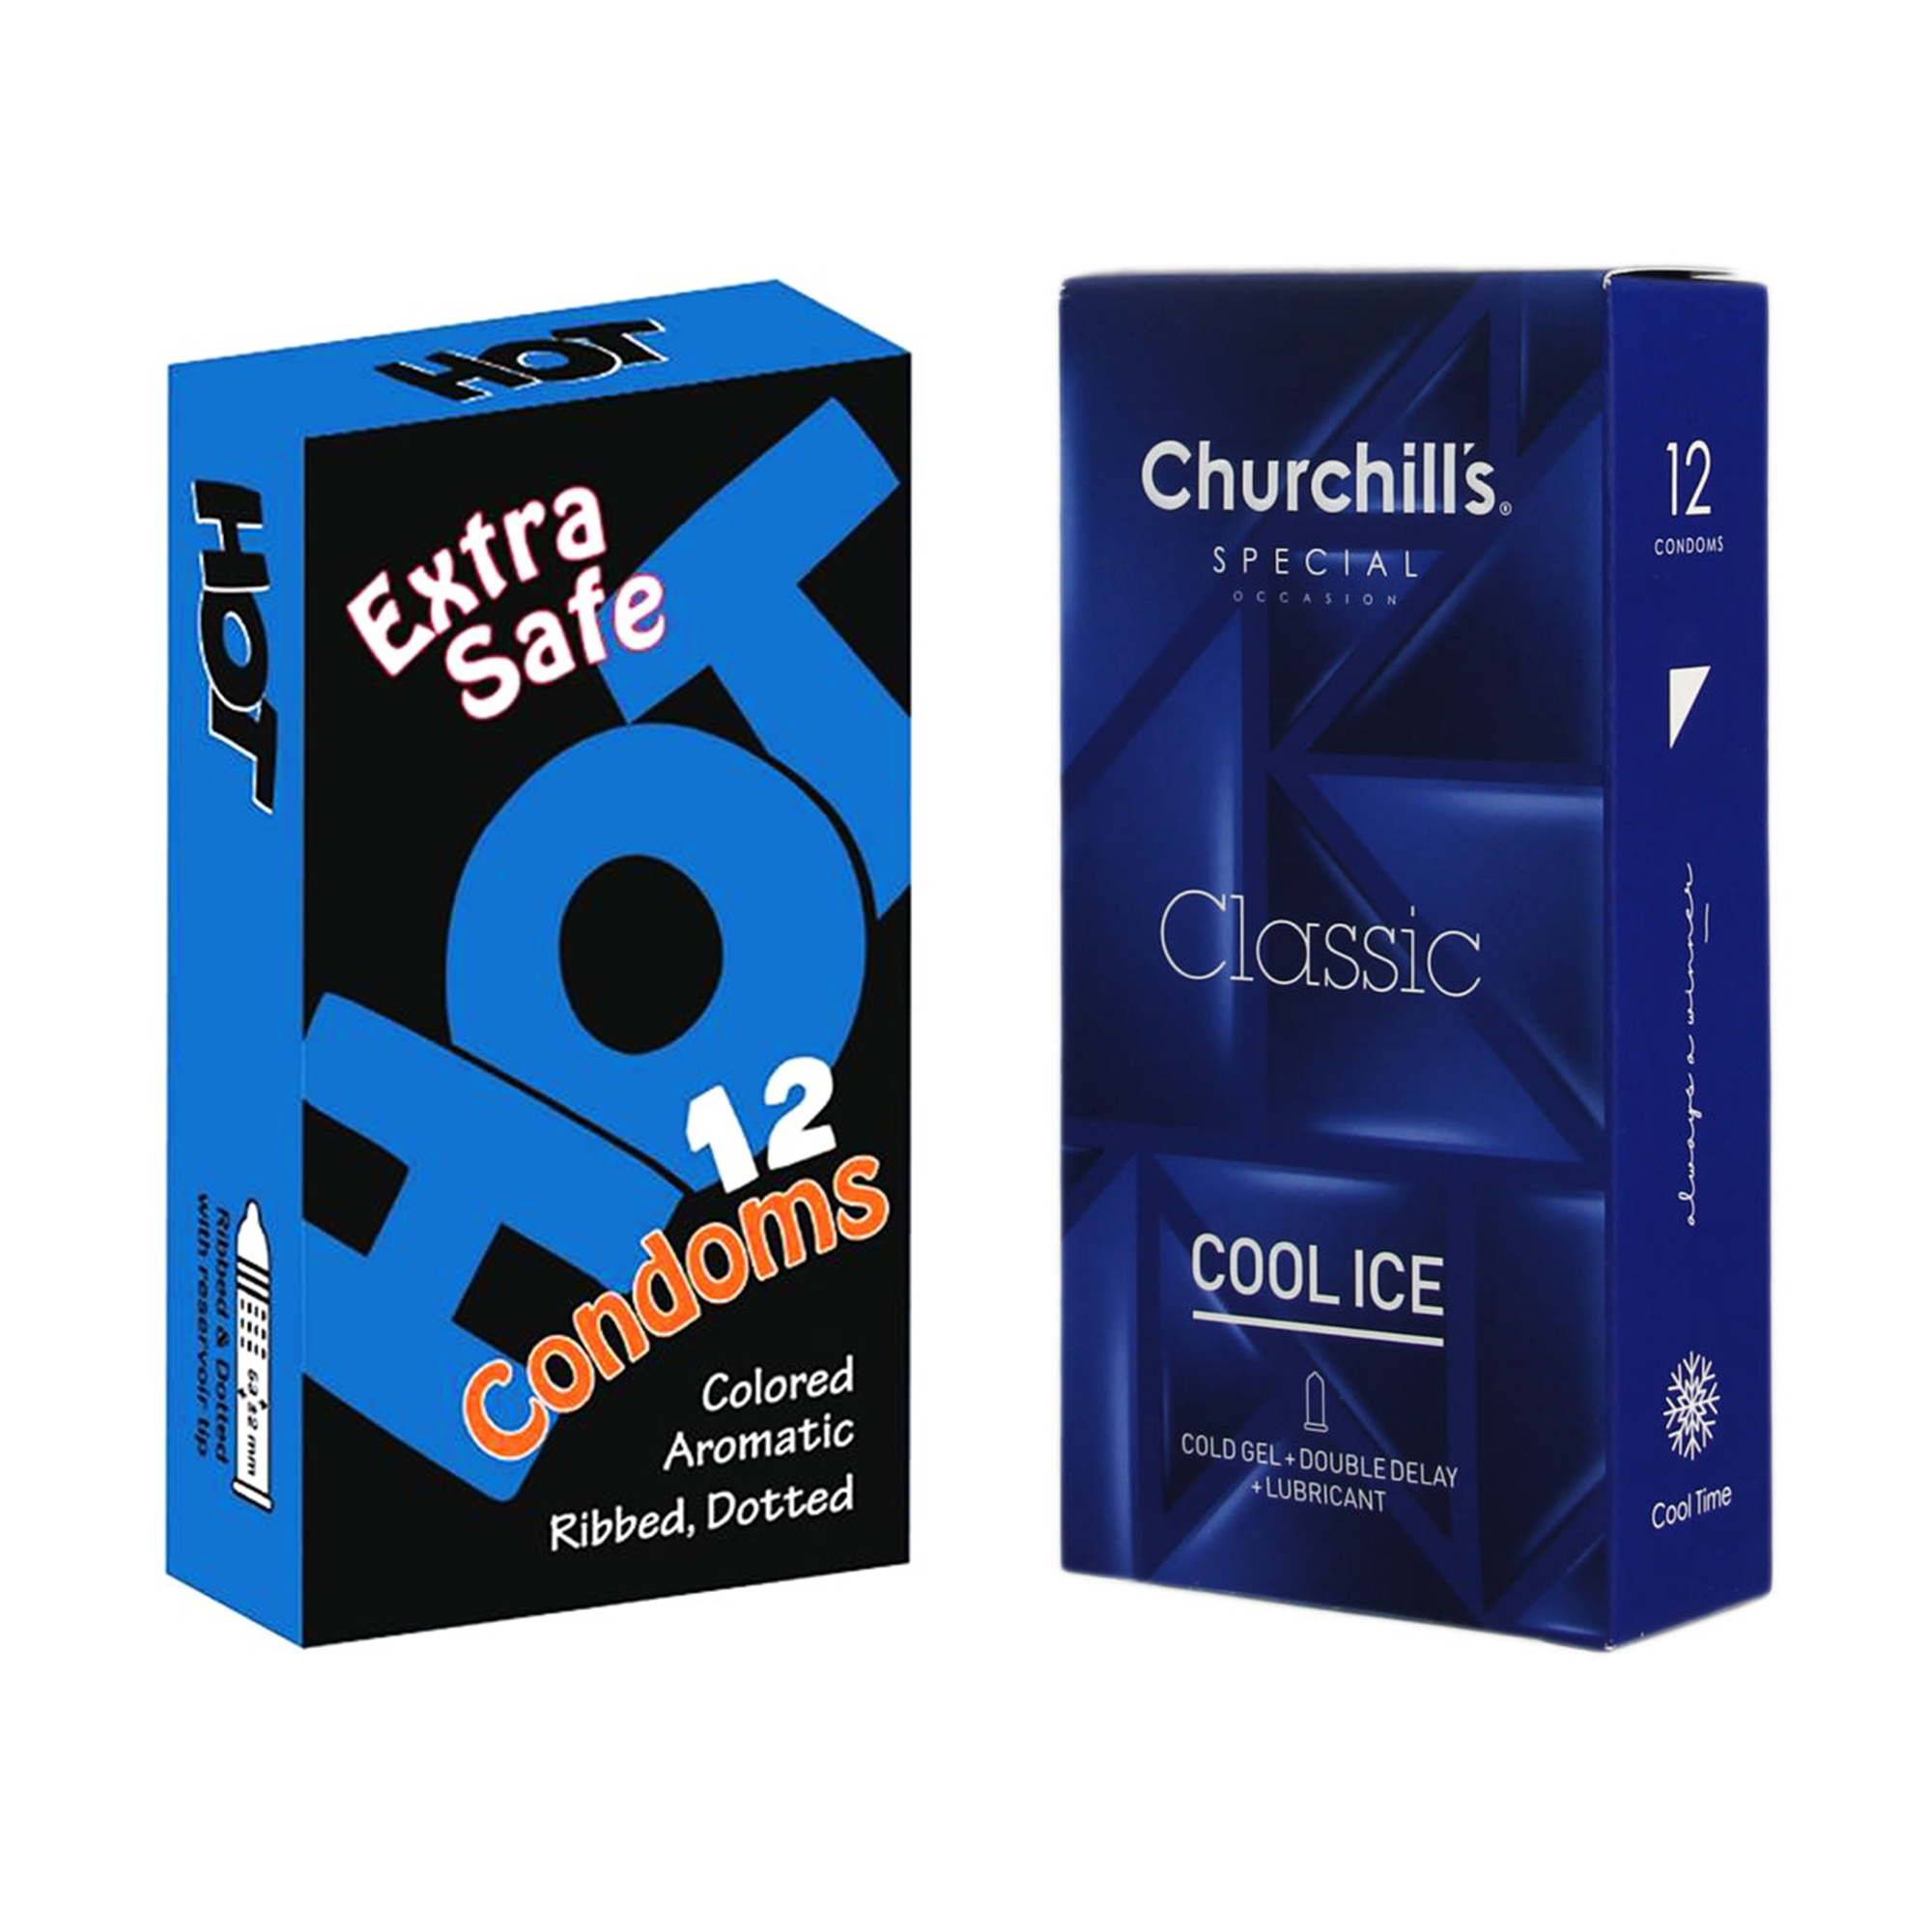 کاندوم چرچیلز مدل Cool Ice بسته 12 عددی به همراه کاندوم هات مدل Extra Safe بسته 12 عددی